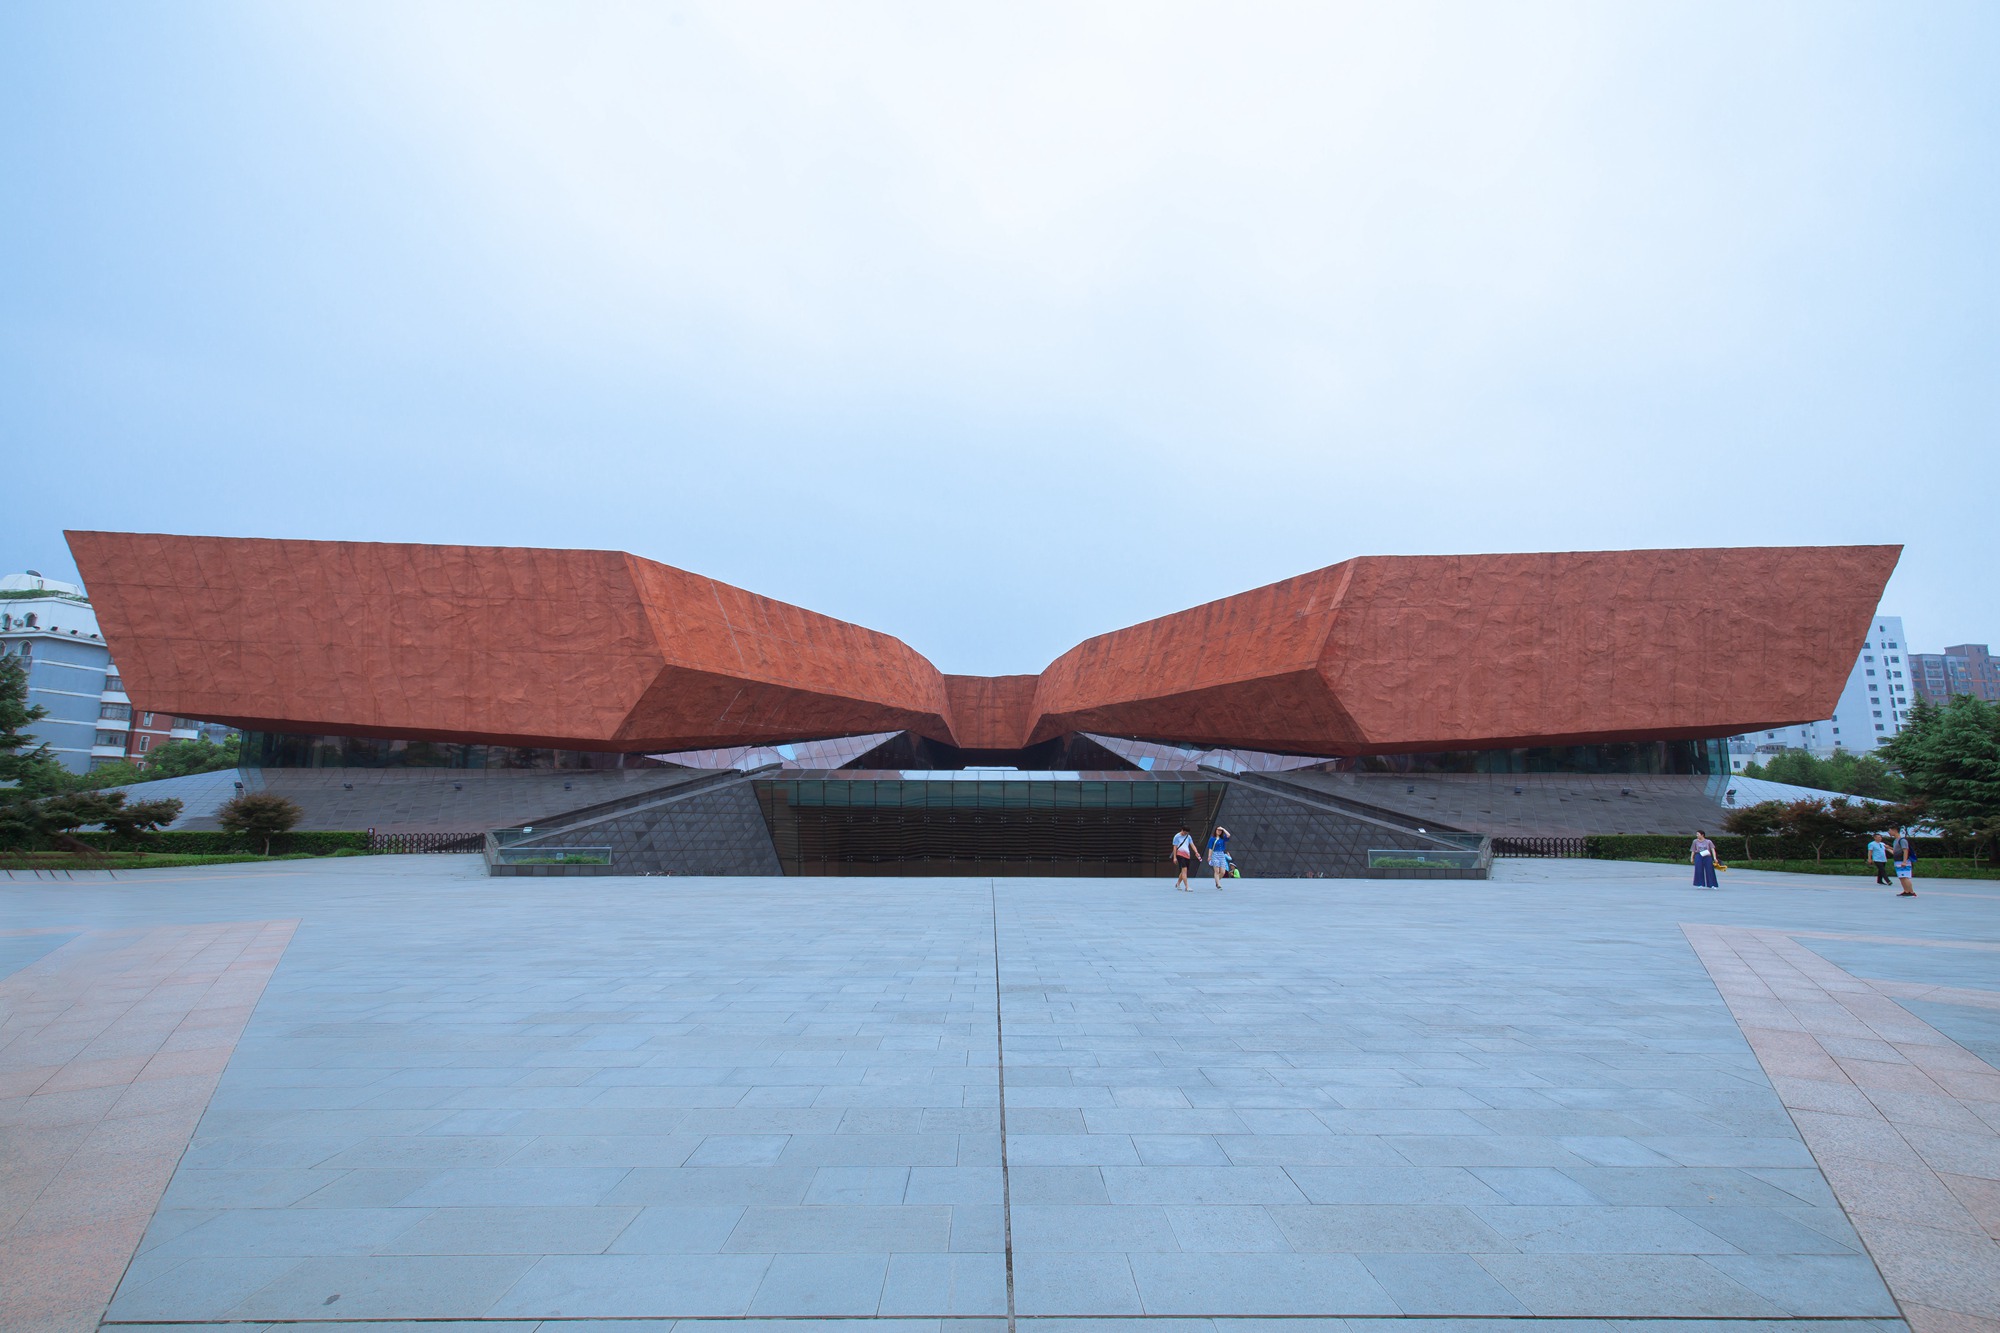 辛亥革命武昌起义纪念馆,是依托中华民国军政府鄂军都督府旧址(即